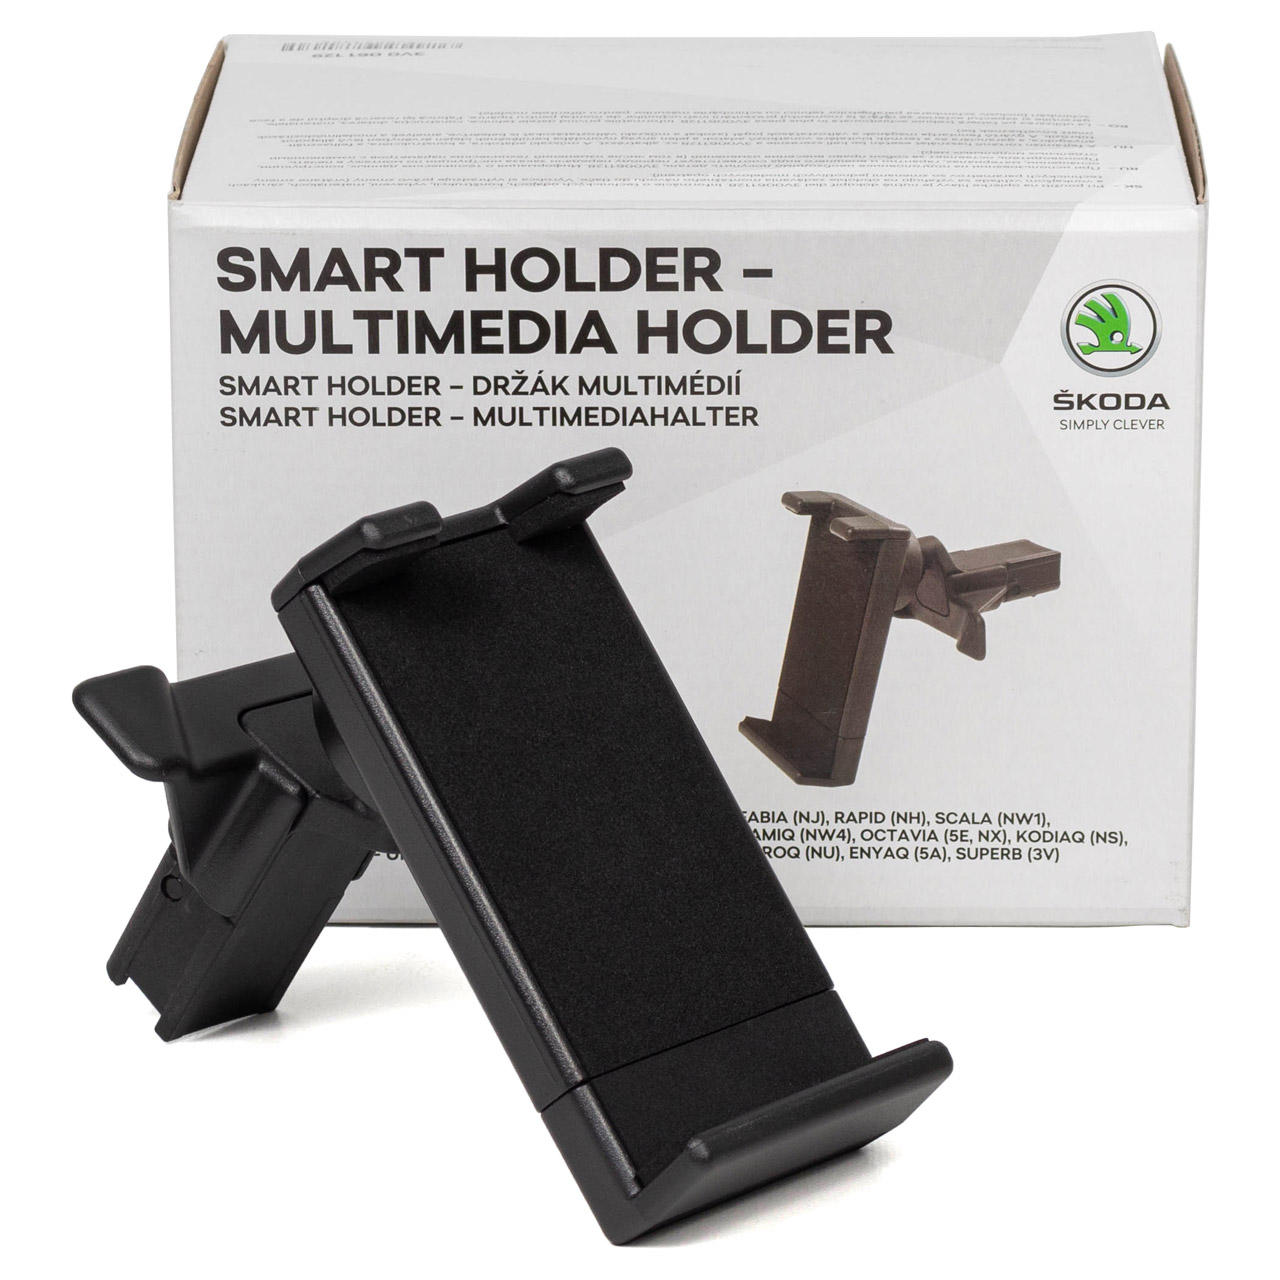 ORIGINAL Skoda Smart Holder-Multimedia-Halter Enyaq Karoq Kodiaq Octavia 4 Rapid 3V0061129